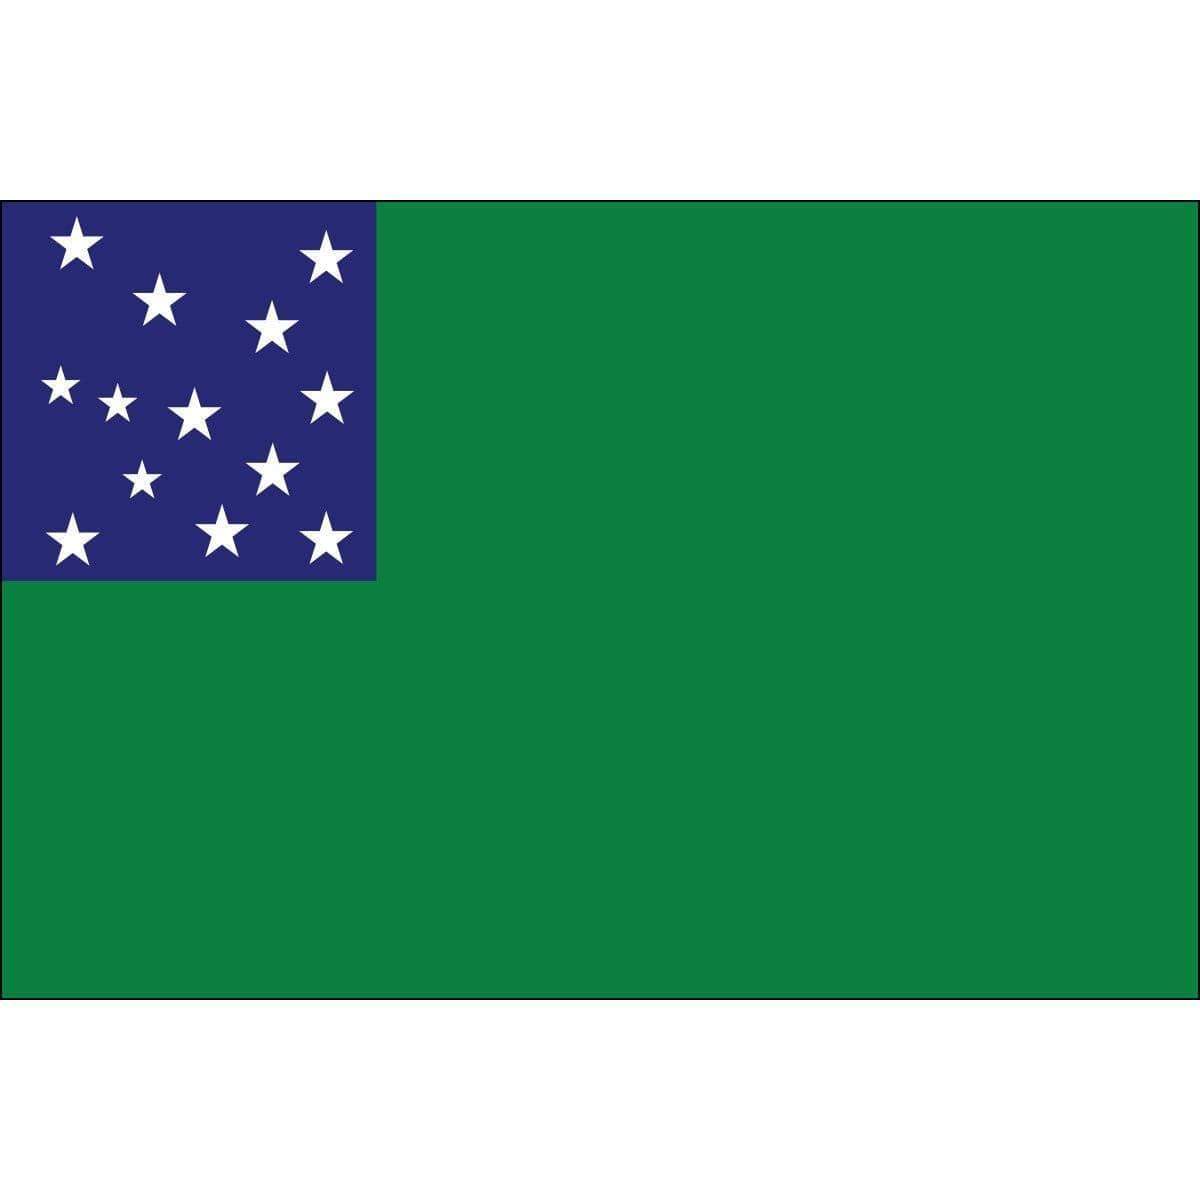 Green Mountain Boys Flag Made in USA.